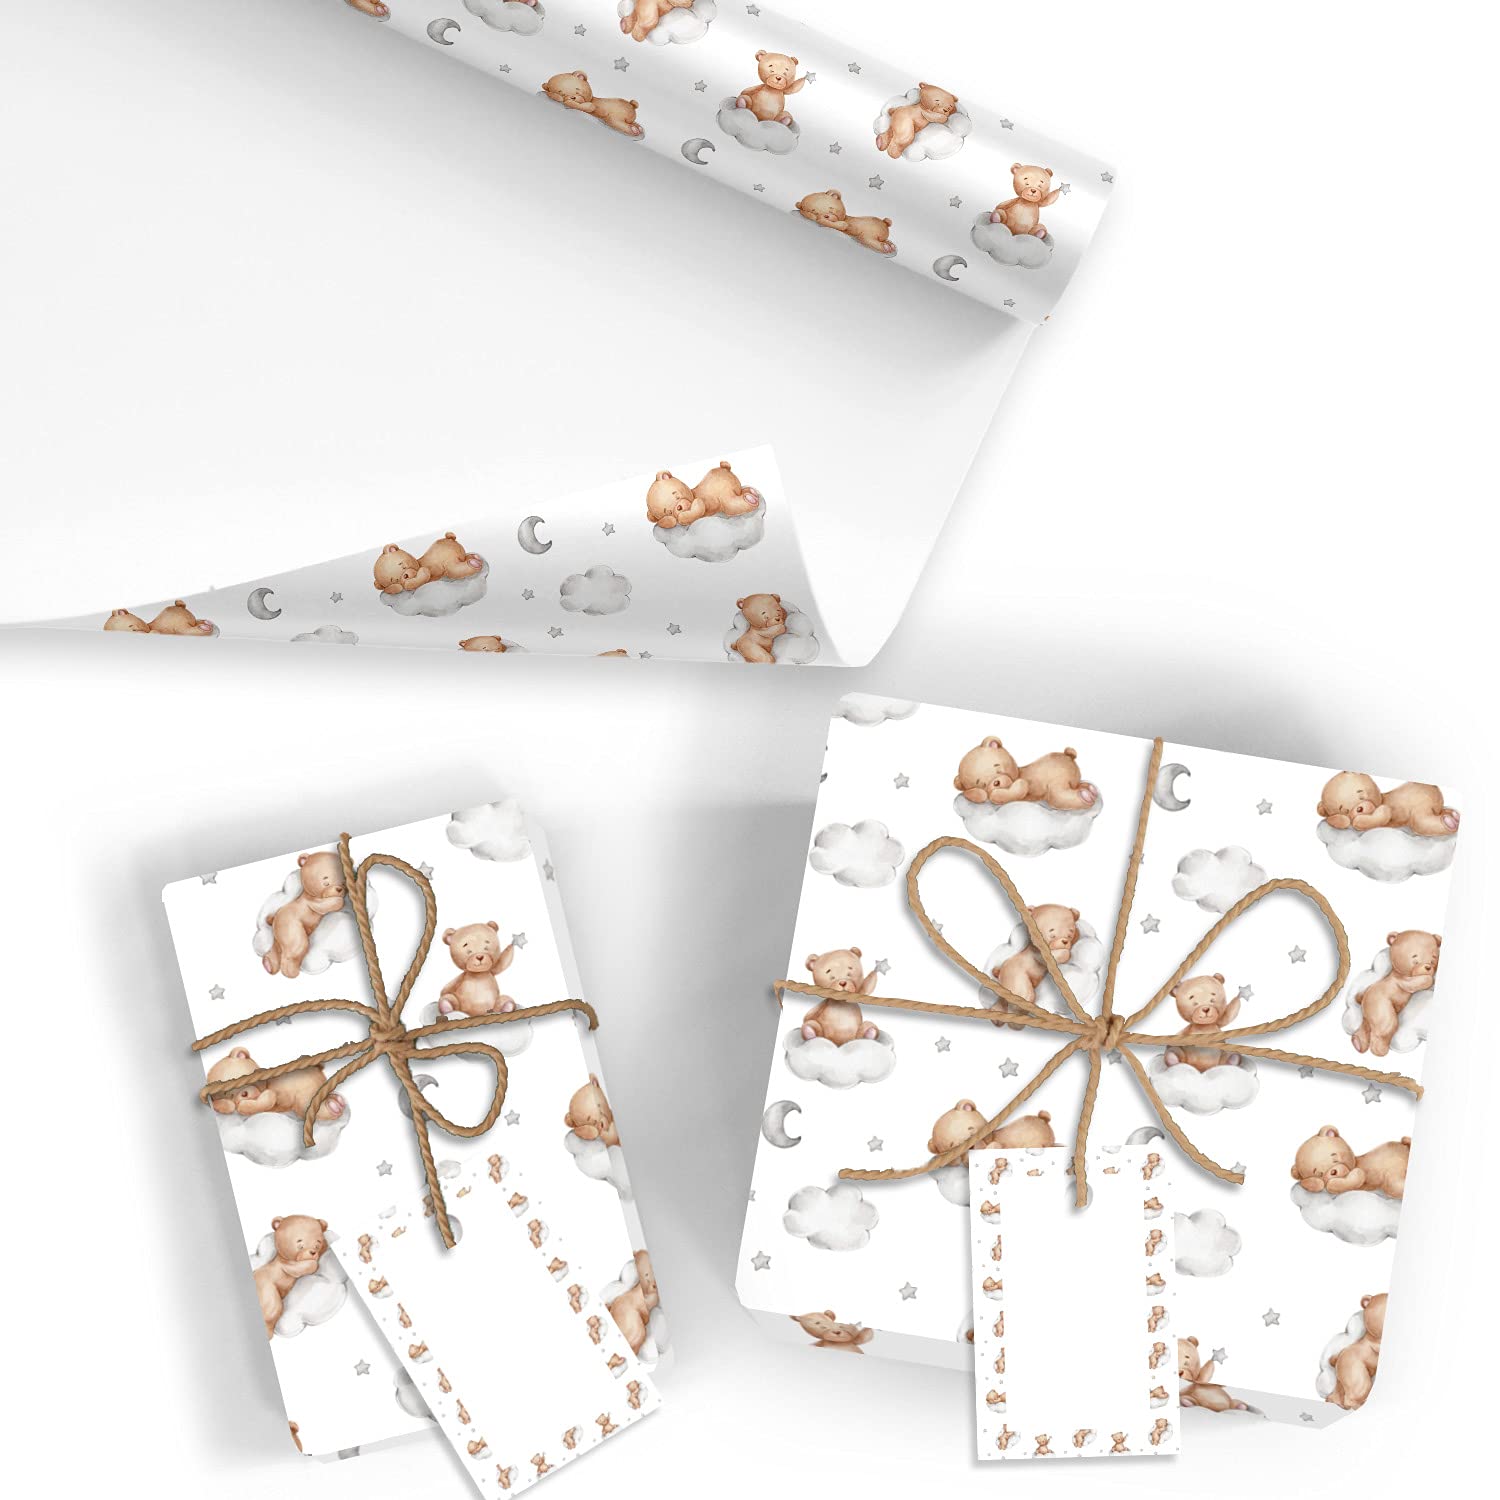 20x Geschenkpapier für Baby/Kind Motiv Bär - 20 große Bogen je 70 x 100 cm - verpackt als eine Rolle - inkl. Passende Geschenkanhänger - Umweltfreundliche Geschenkverpackung - Marke Neuser